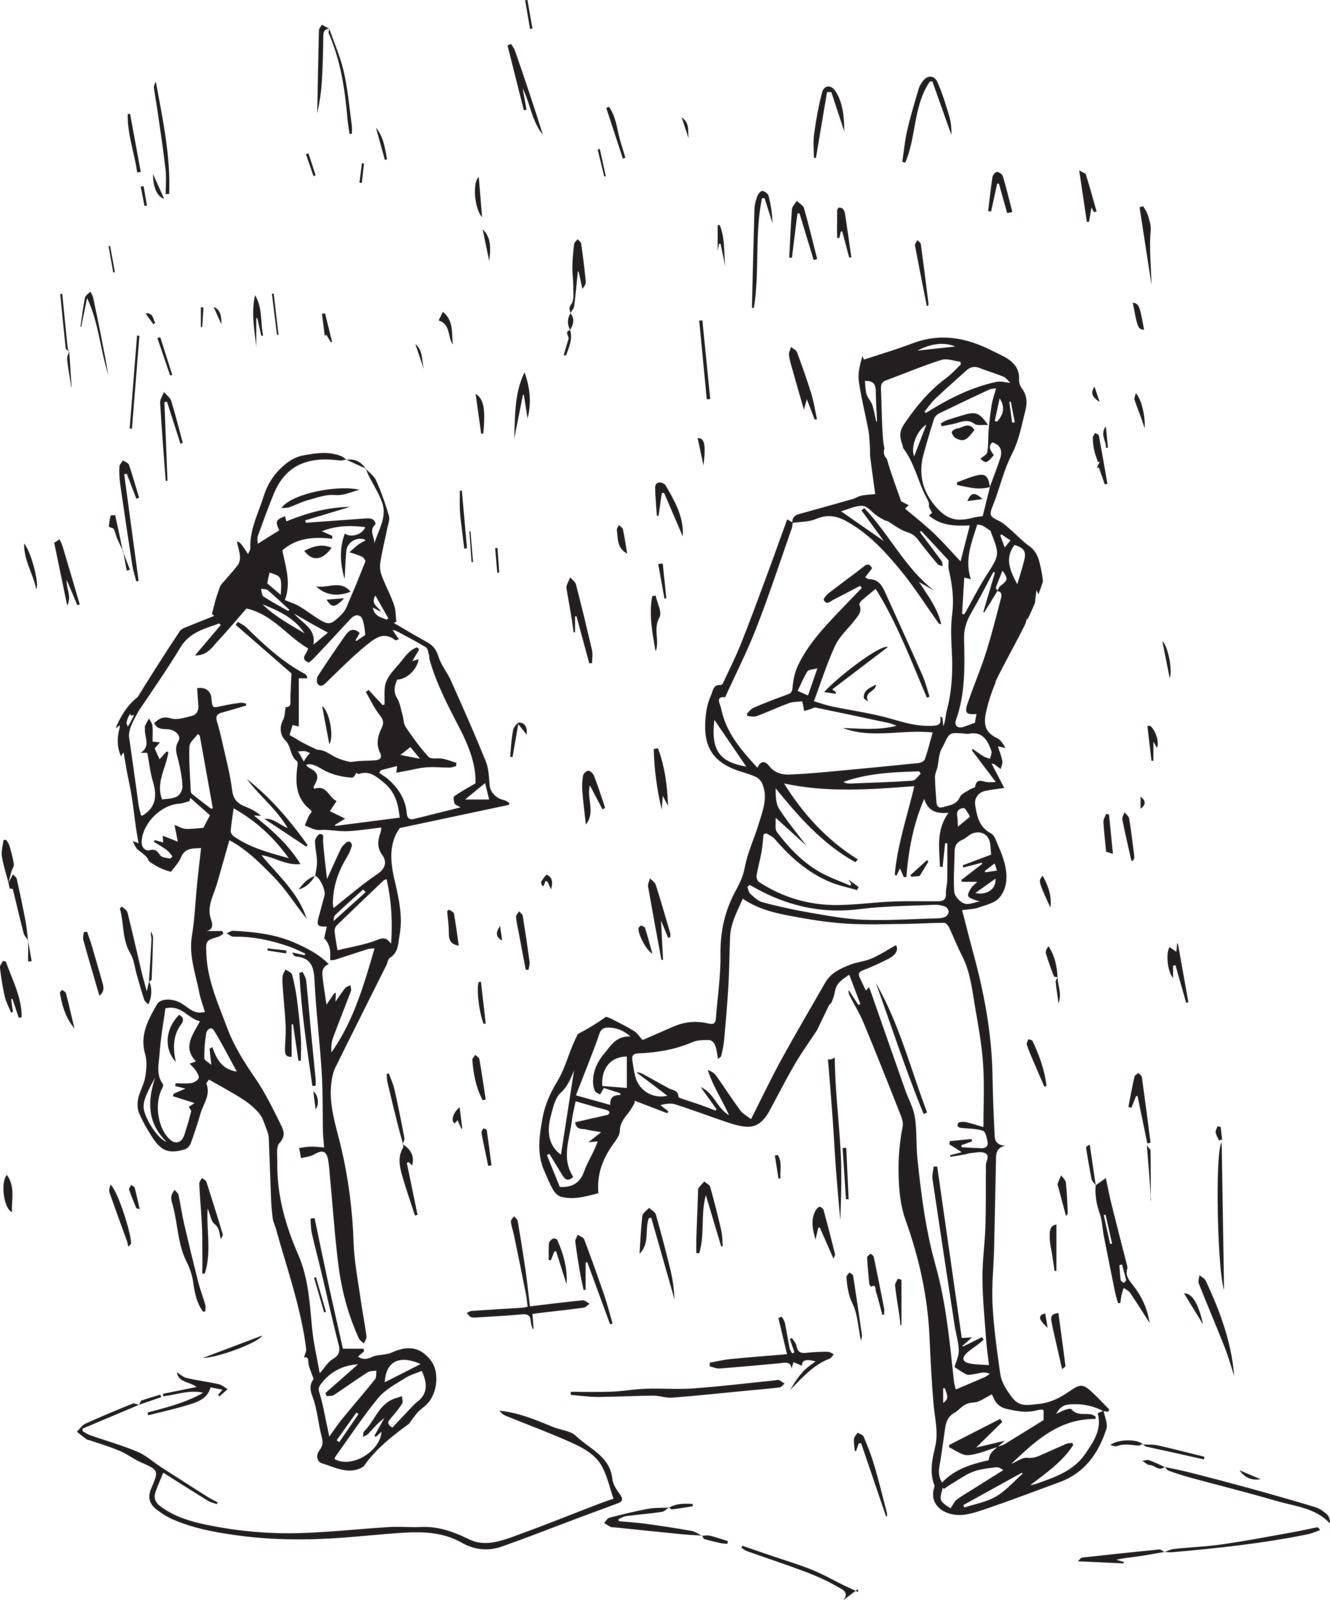 Sketch of Runners in Rain by aroas